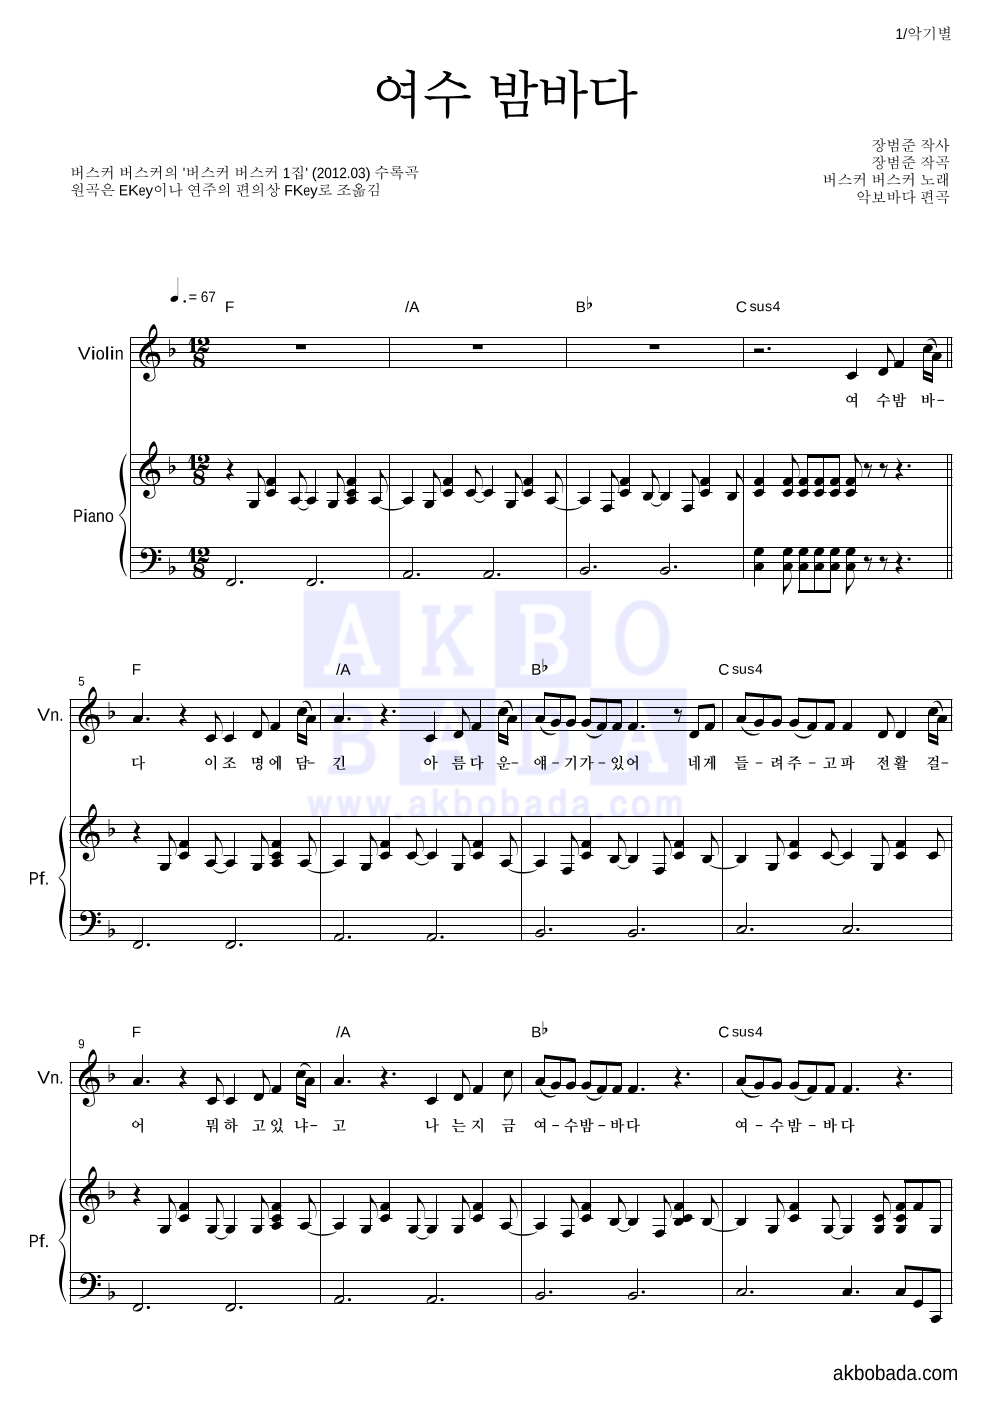 버스커 버스커 - 여수 밤바다 바이올린&피아노 악보 